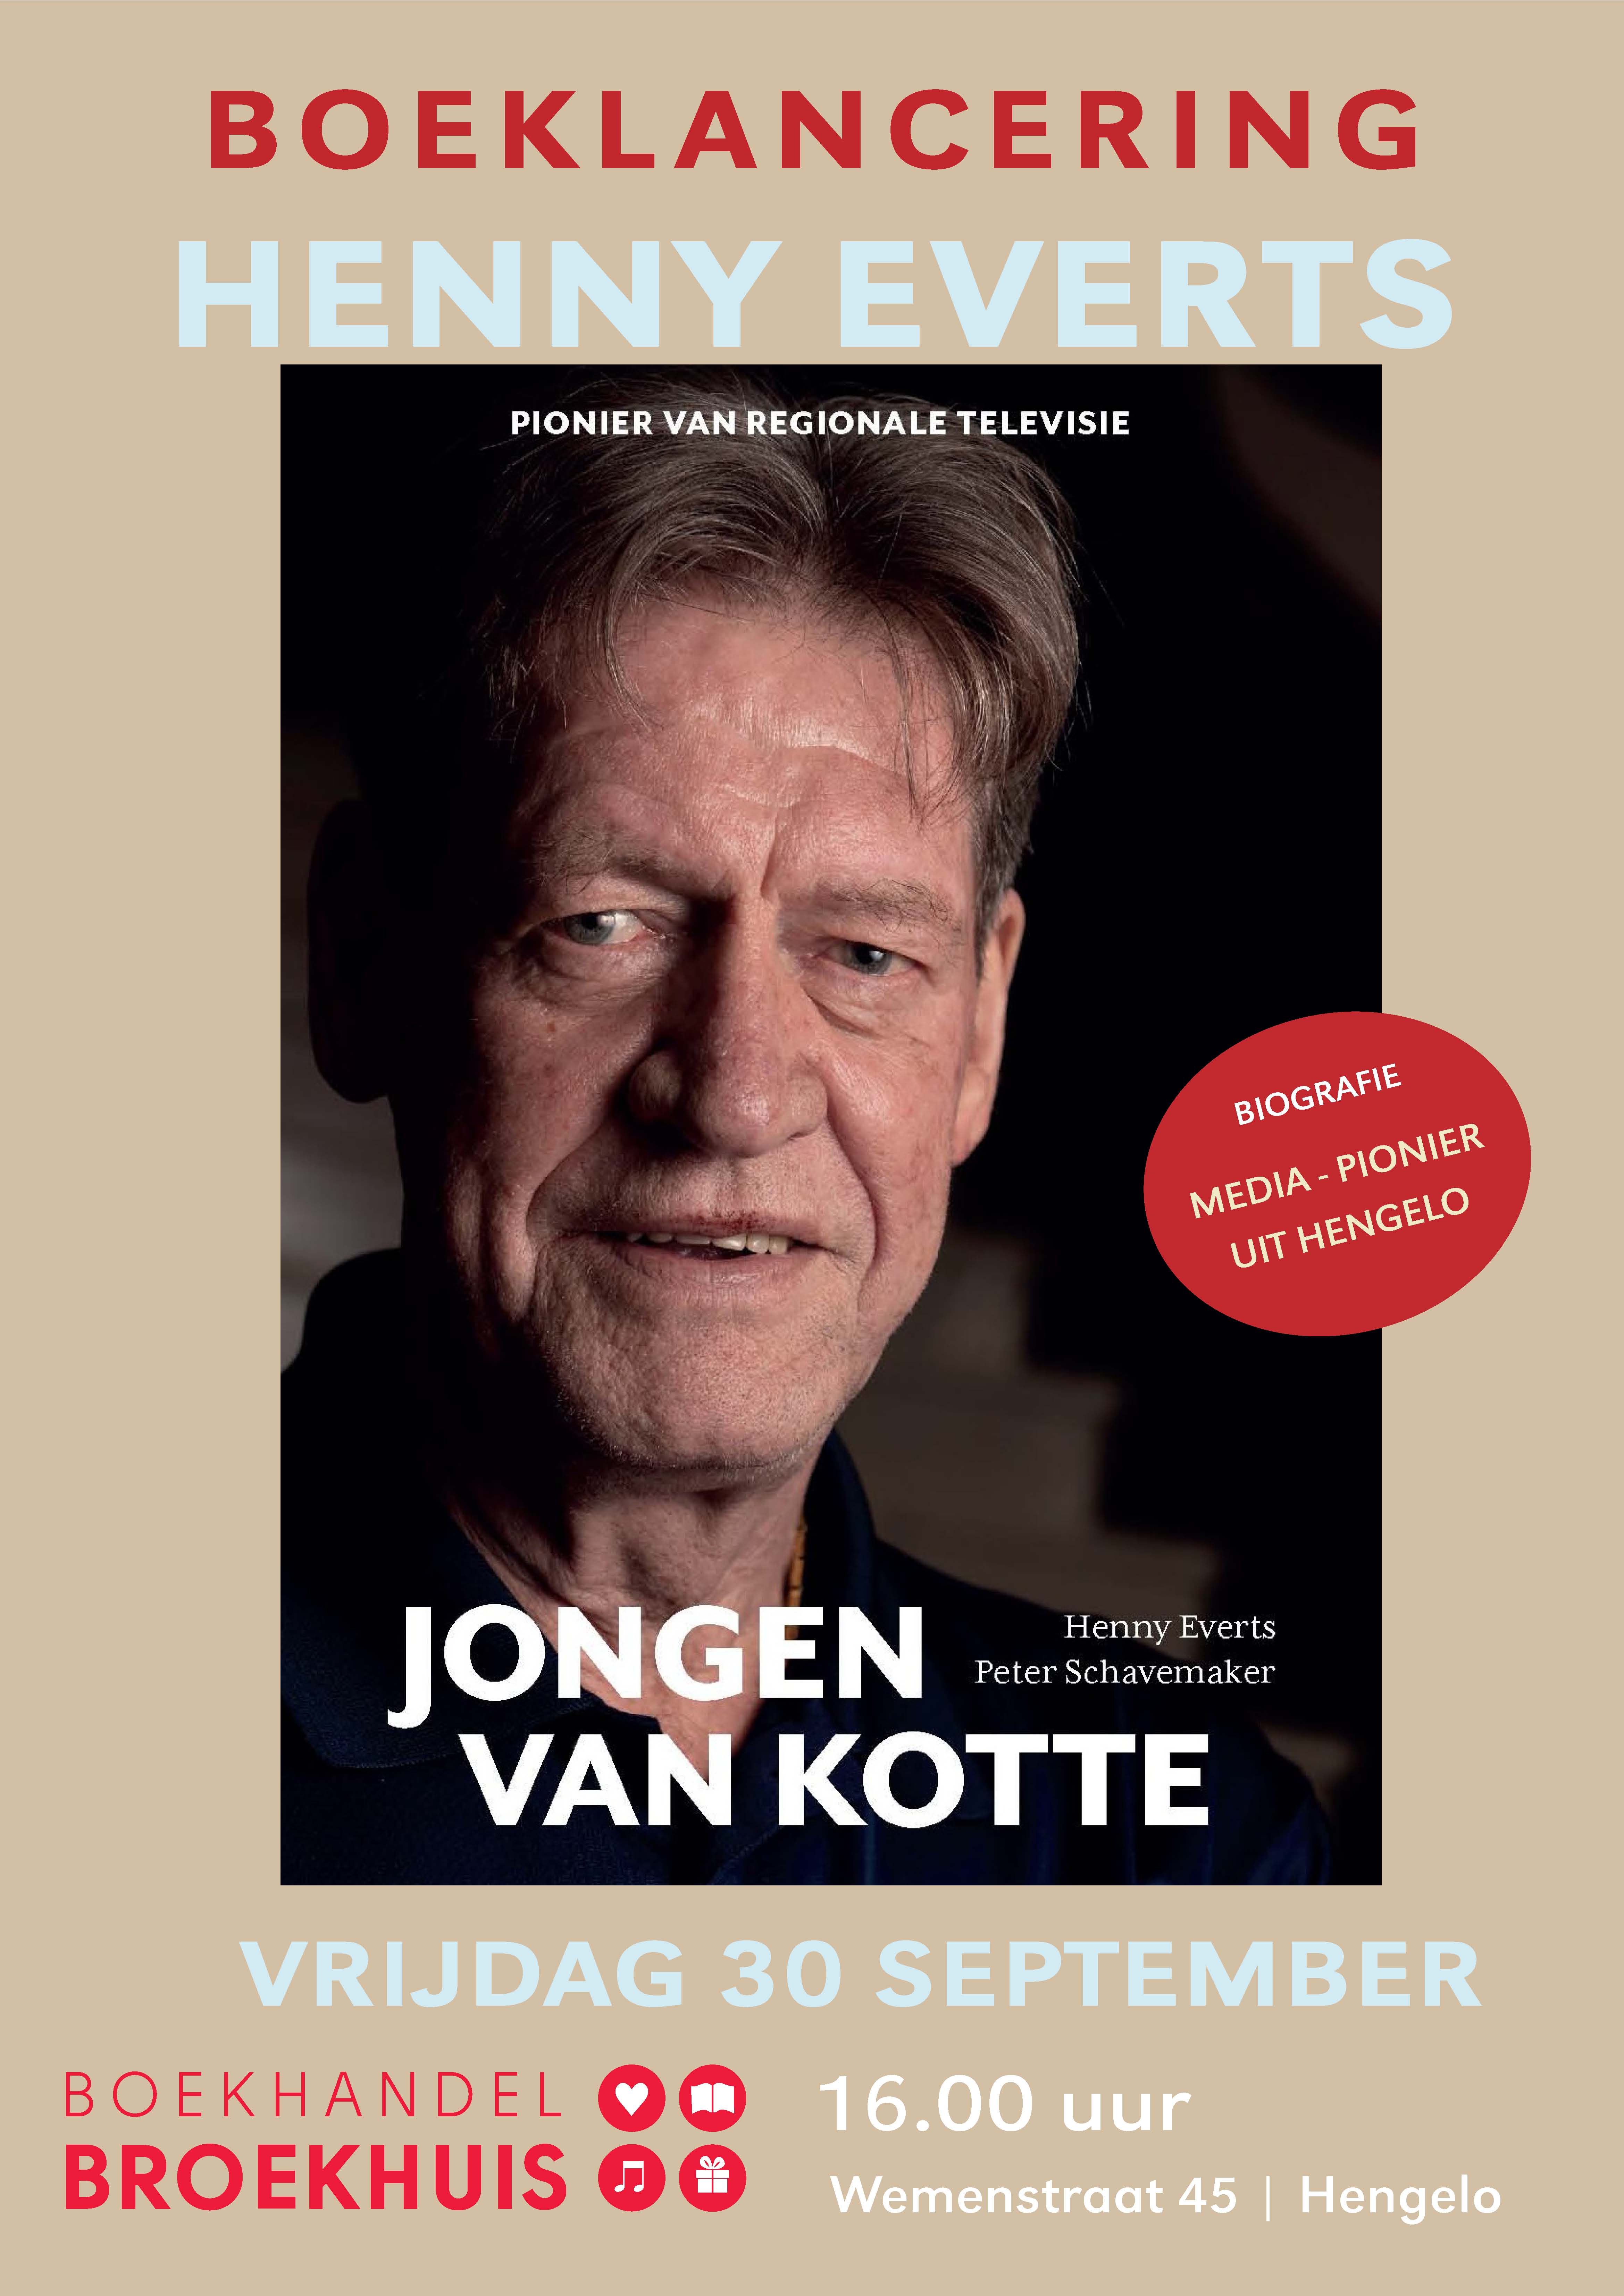 Boeklancering Henny Everts: De jongen van Kotte op 30 september bij Broekhuis Hengelo